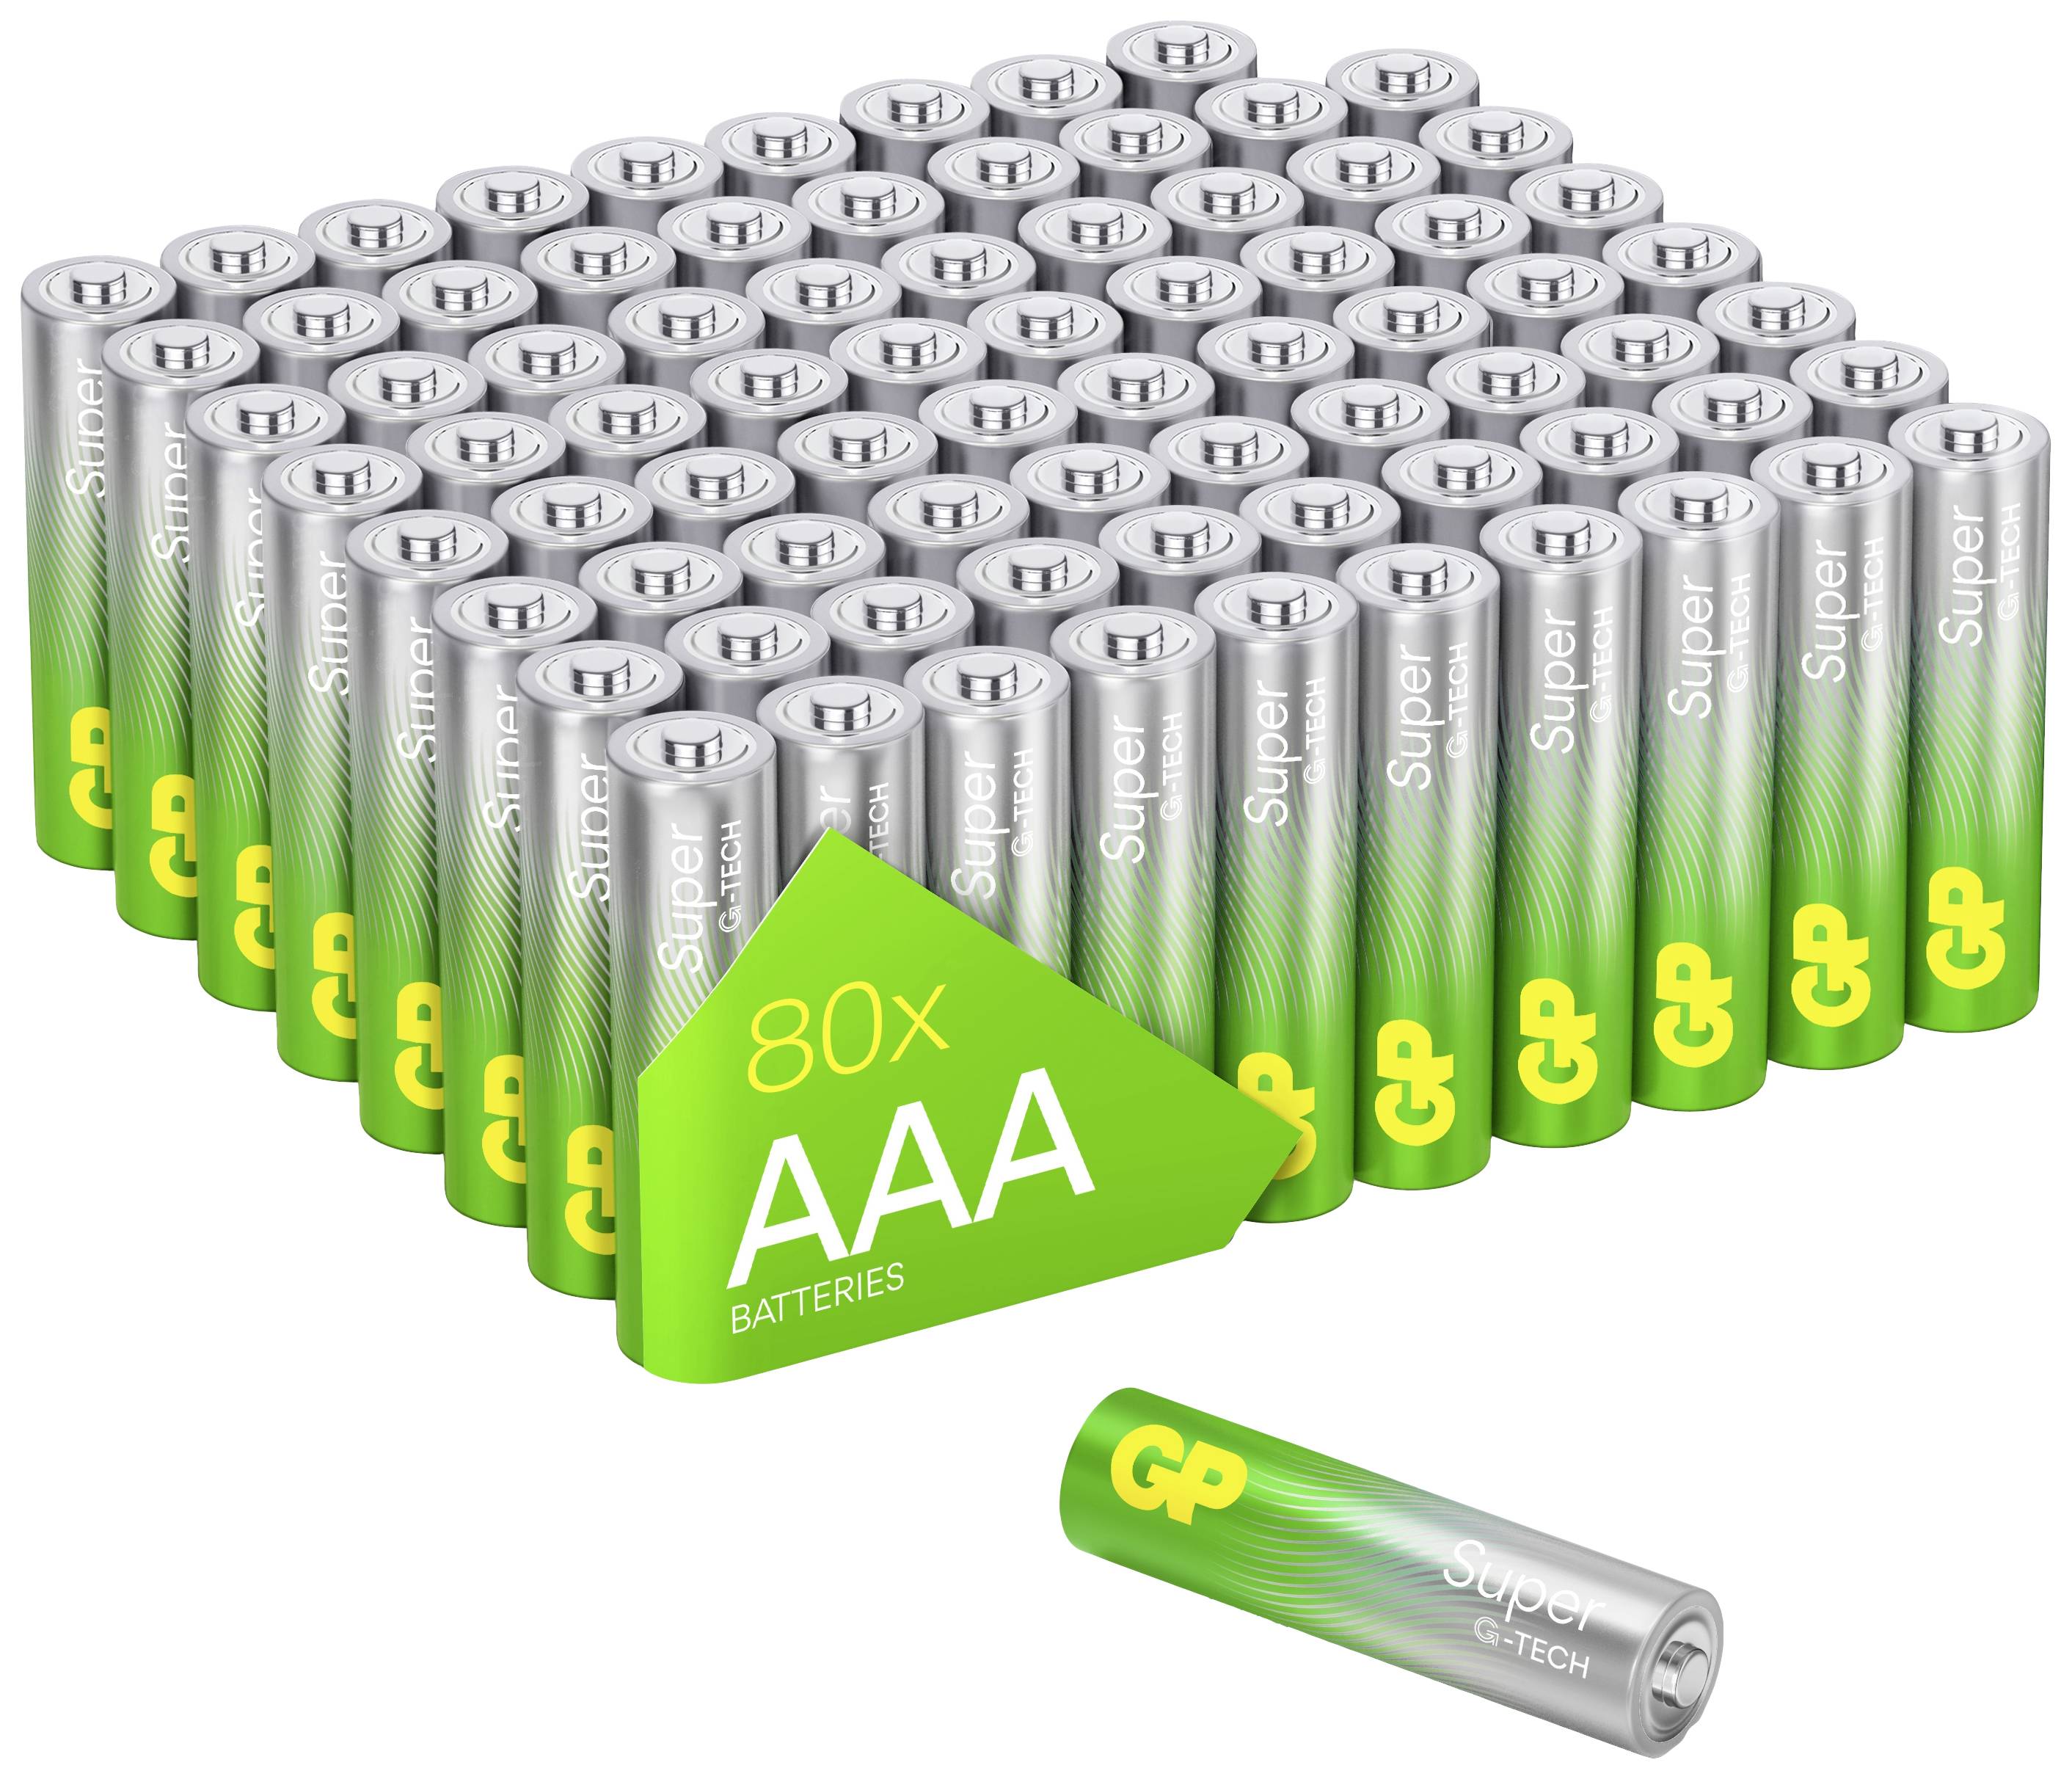 Батарейки GP G-Tech AAA. Соло -ААА: 1,5v Alkaline 30 %. GP super Alkaline Battery. GP батарейки Мадагаскара.